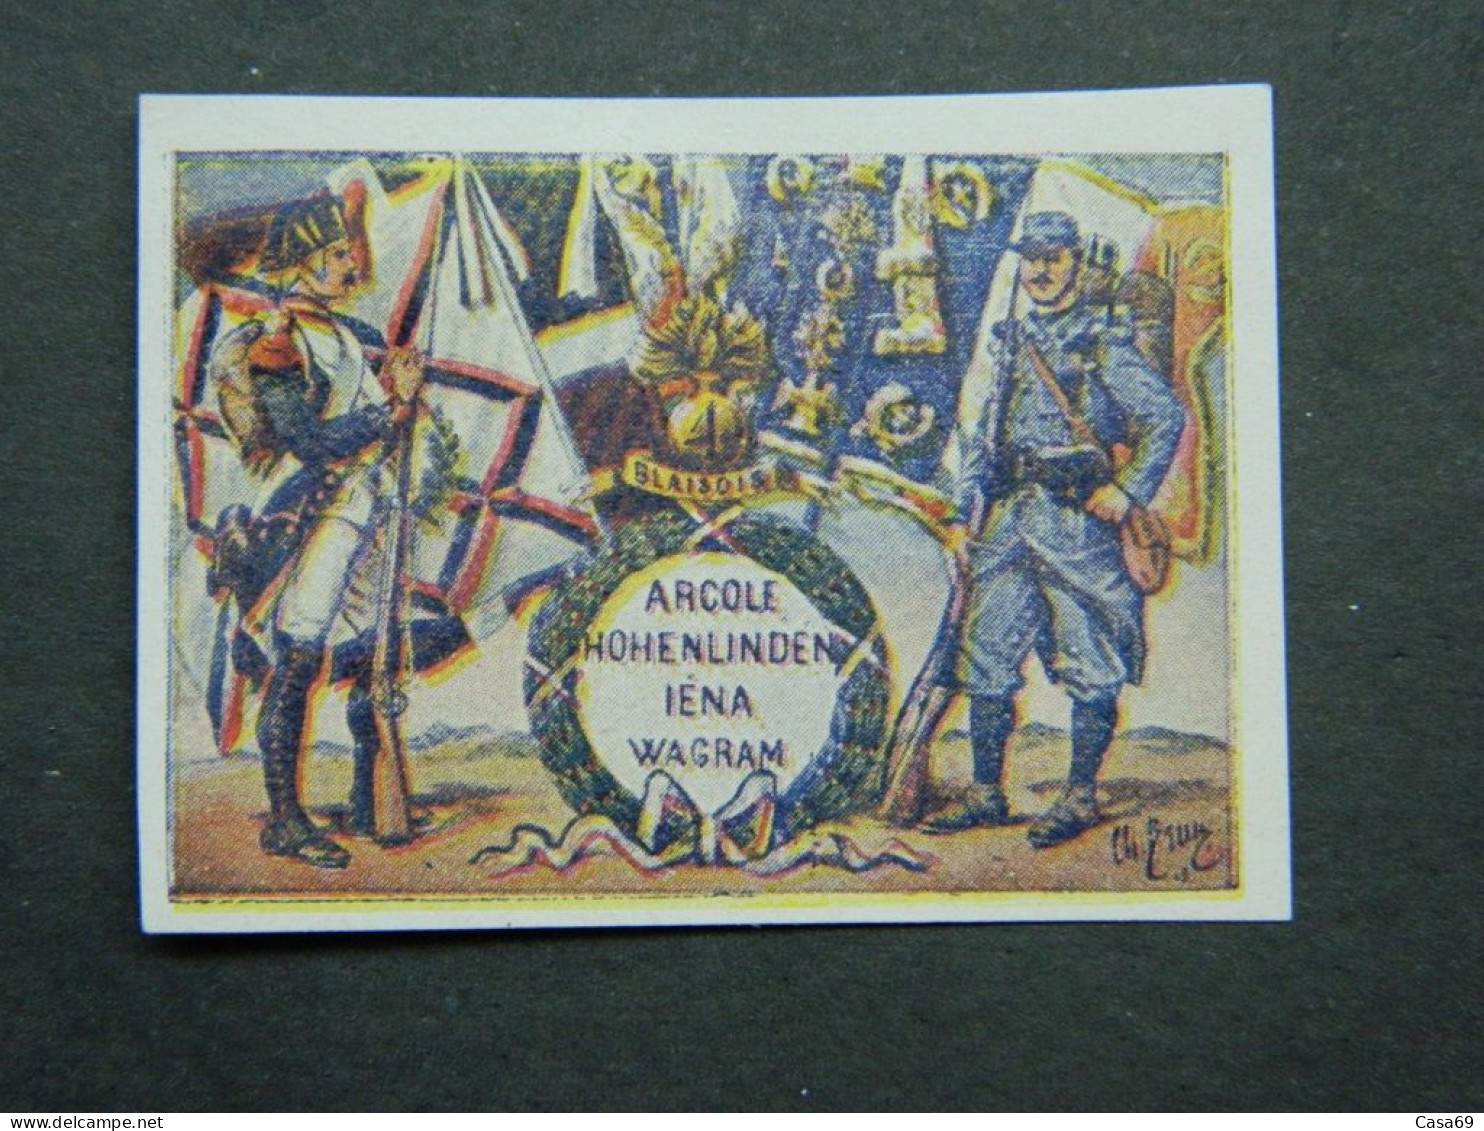 Vignette Militaire Delandre Non Dentelée 4ème Régiment D'Infanterie Blaisois Illustration Charles Brun - Militärmarken